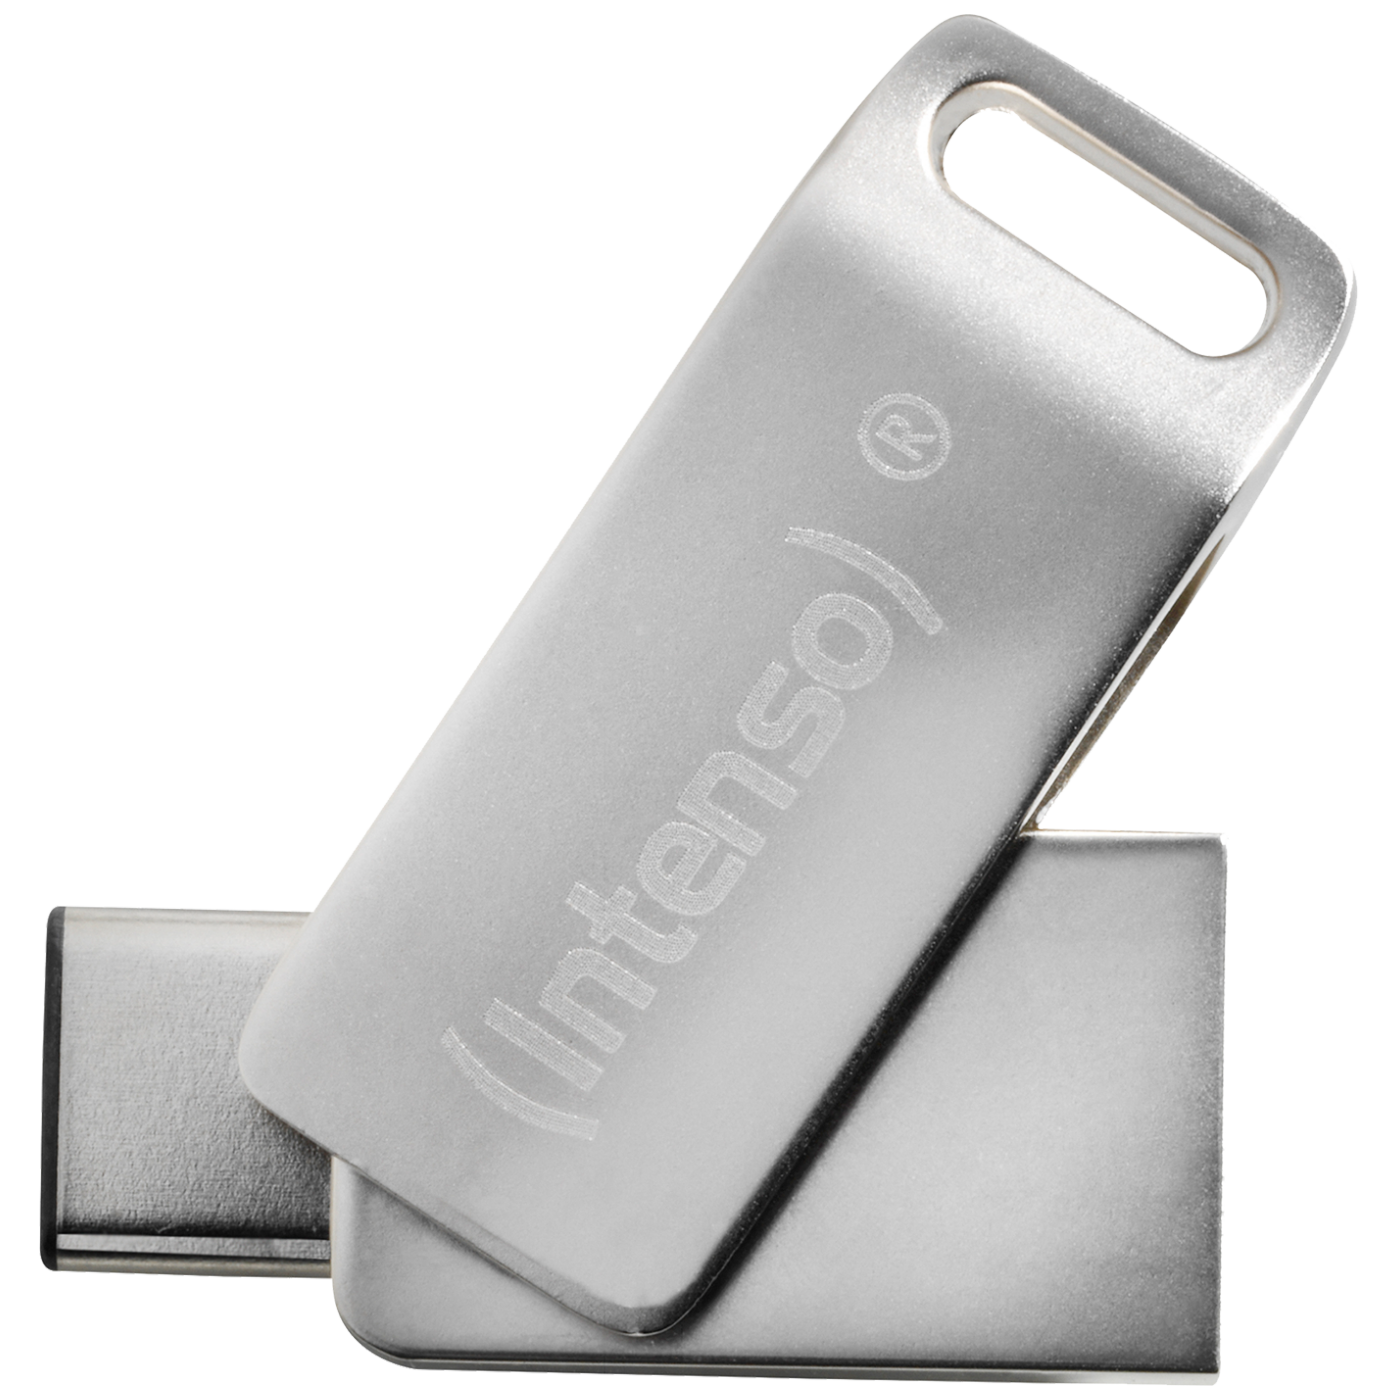 USB Flash drive 64GB Hi-Speed USB 3.0, Micro USB C port